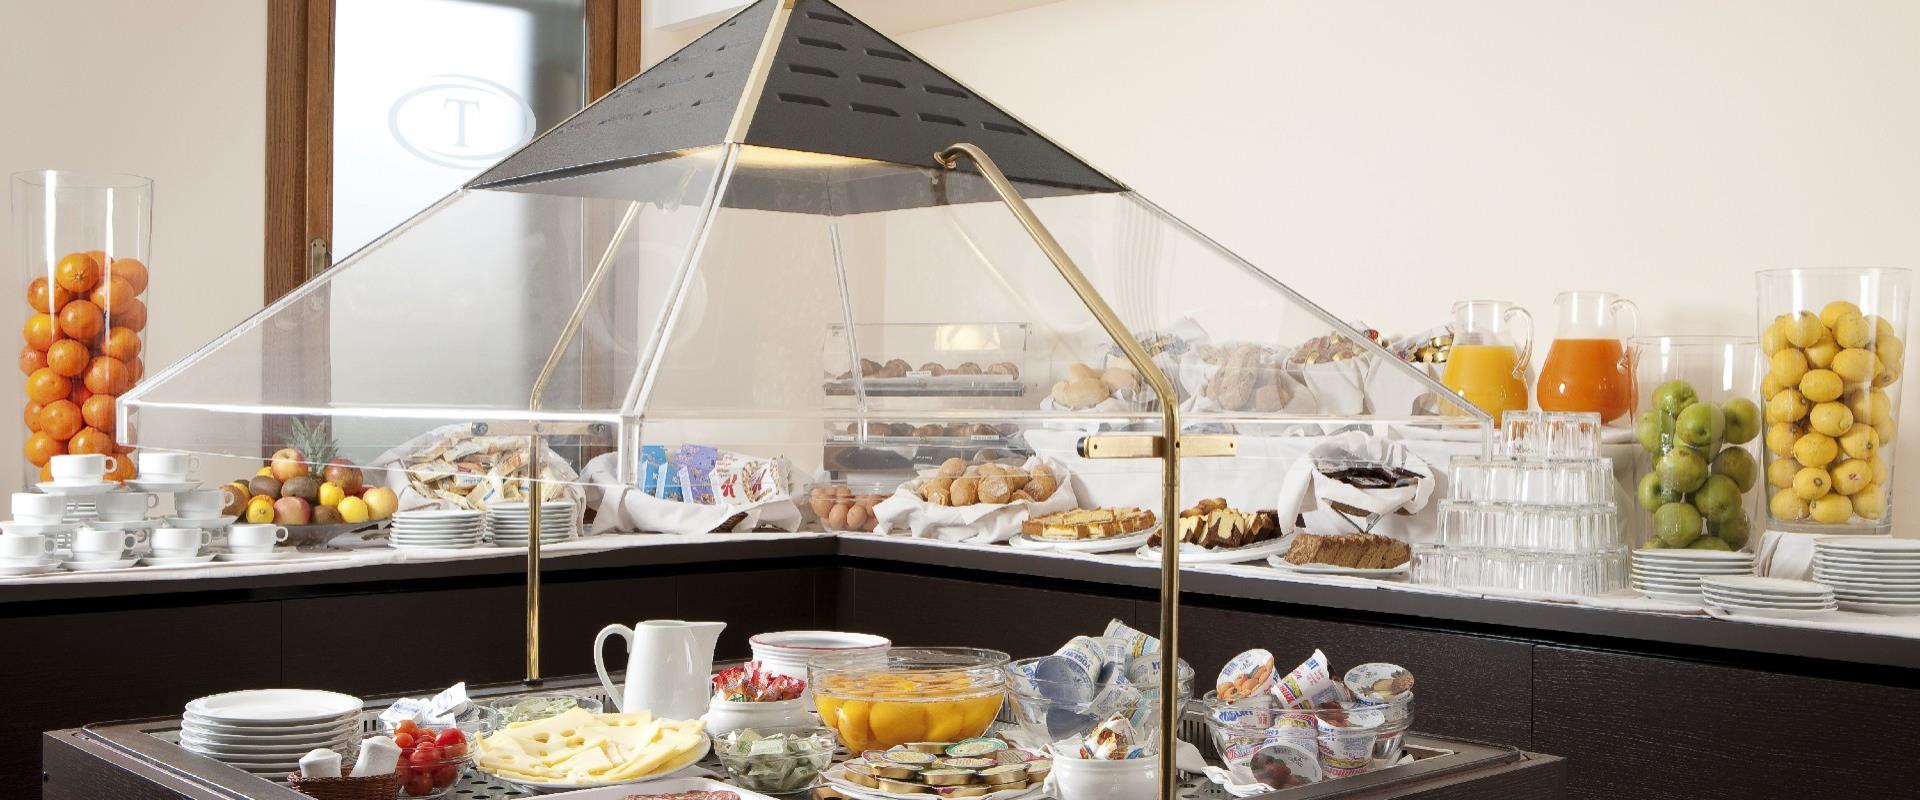 Scopri la varietà del buffet colazione del Titian Inn Hotel Treviso, confortevole 4 stelle a Treviso Silea!